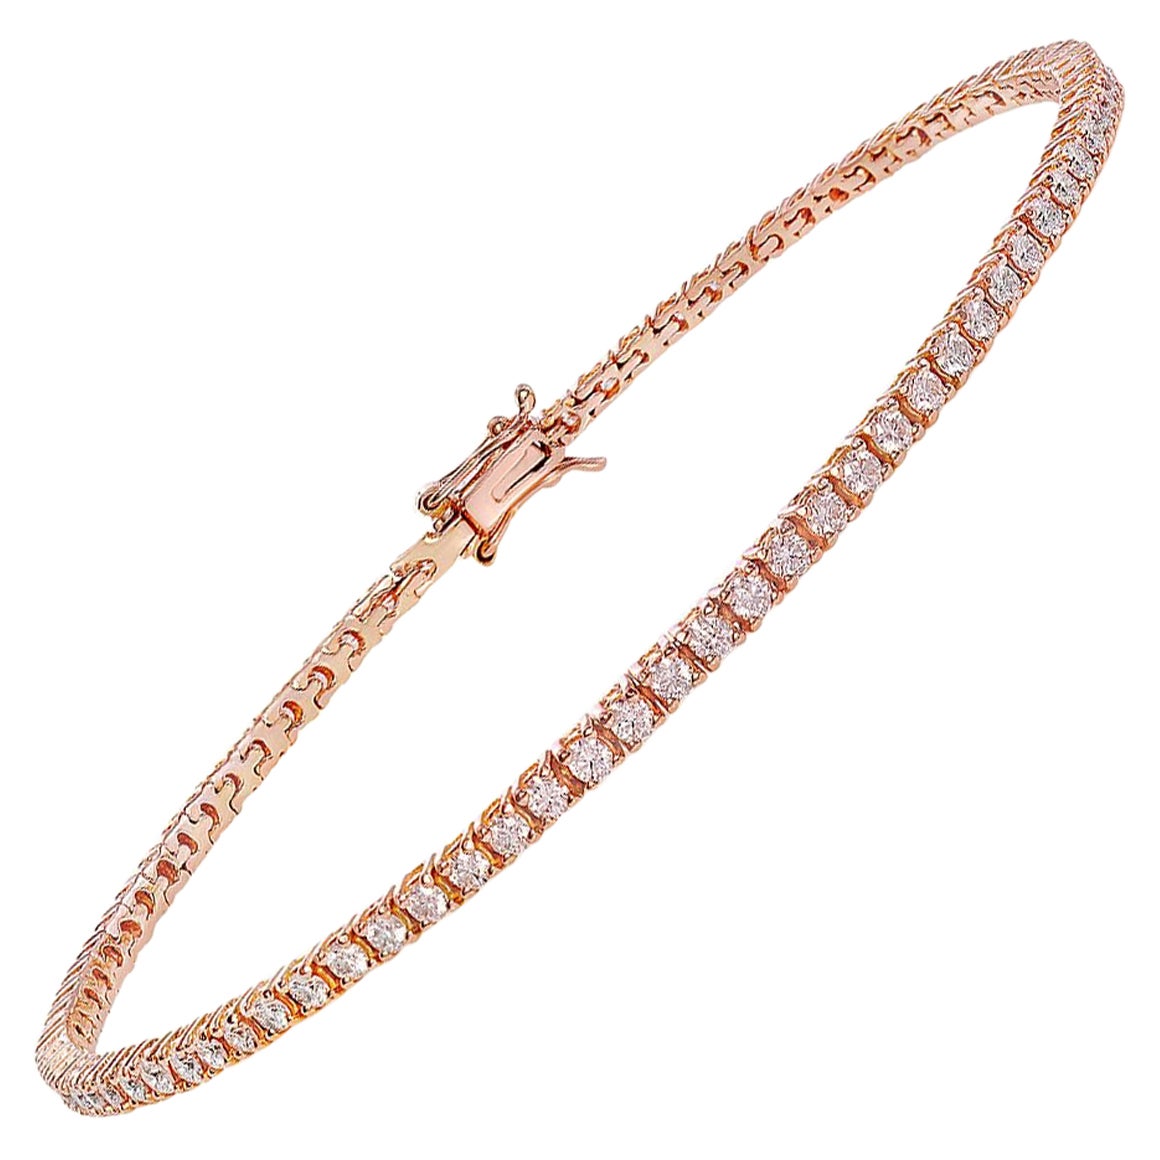 Bracelet tennis de haute qualité en or rose 18 carats et diamants